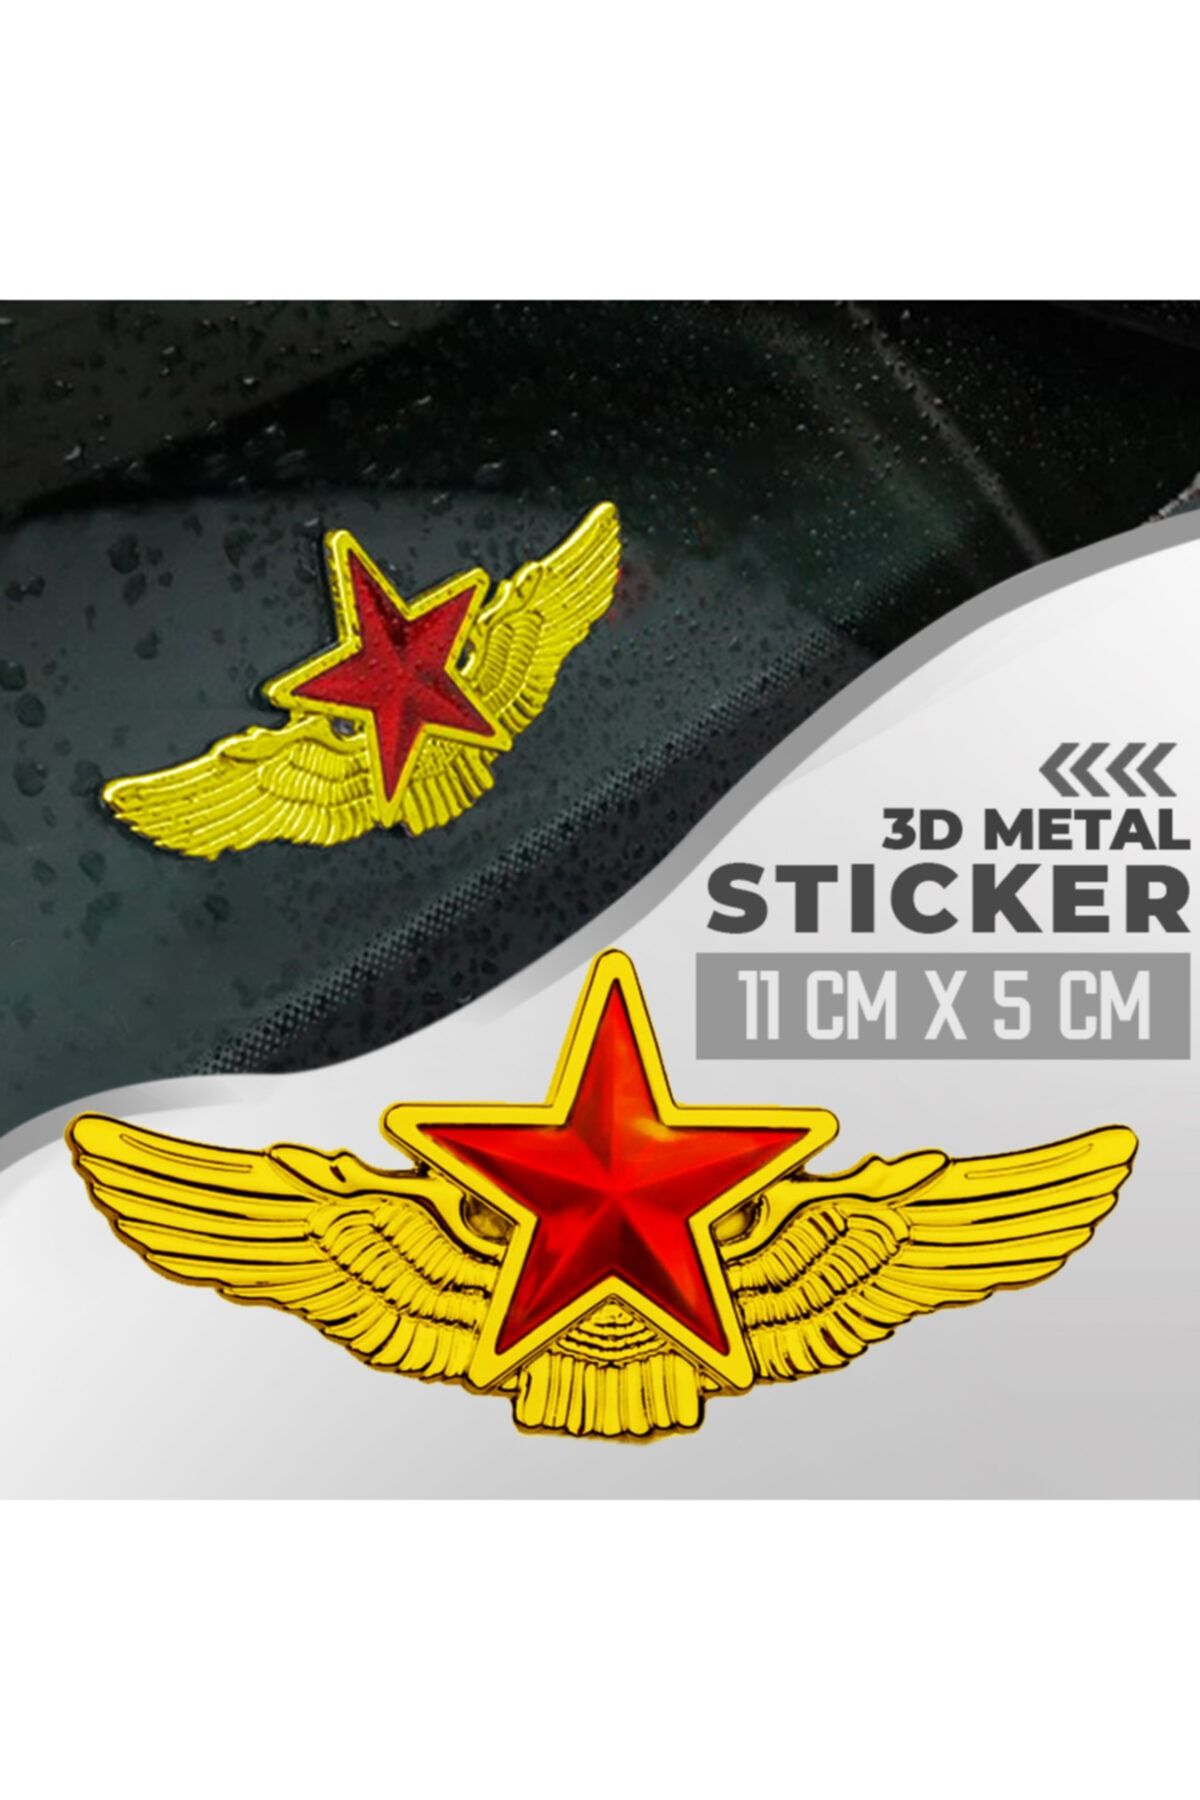 C9 Metal Yıldız Altın Renk Paslanmaz Metal Arma Sticker Yapışkanlı 11 Cm X 5 Cm